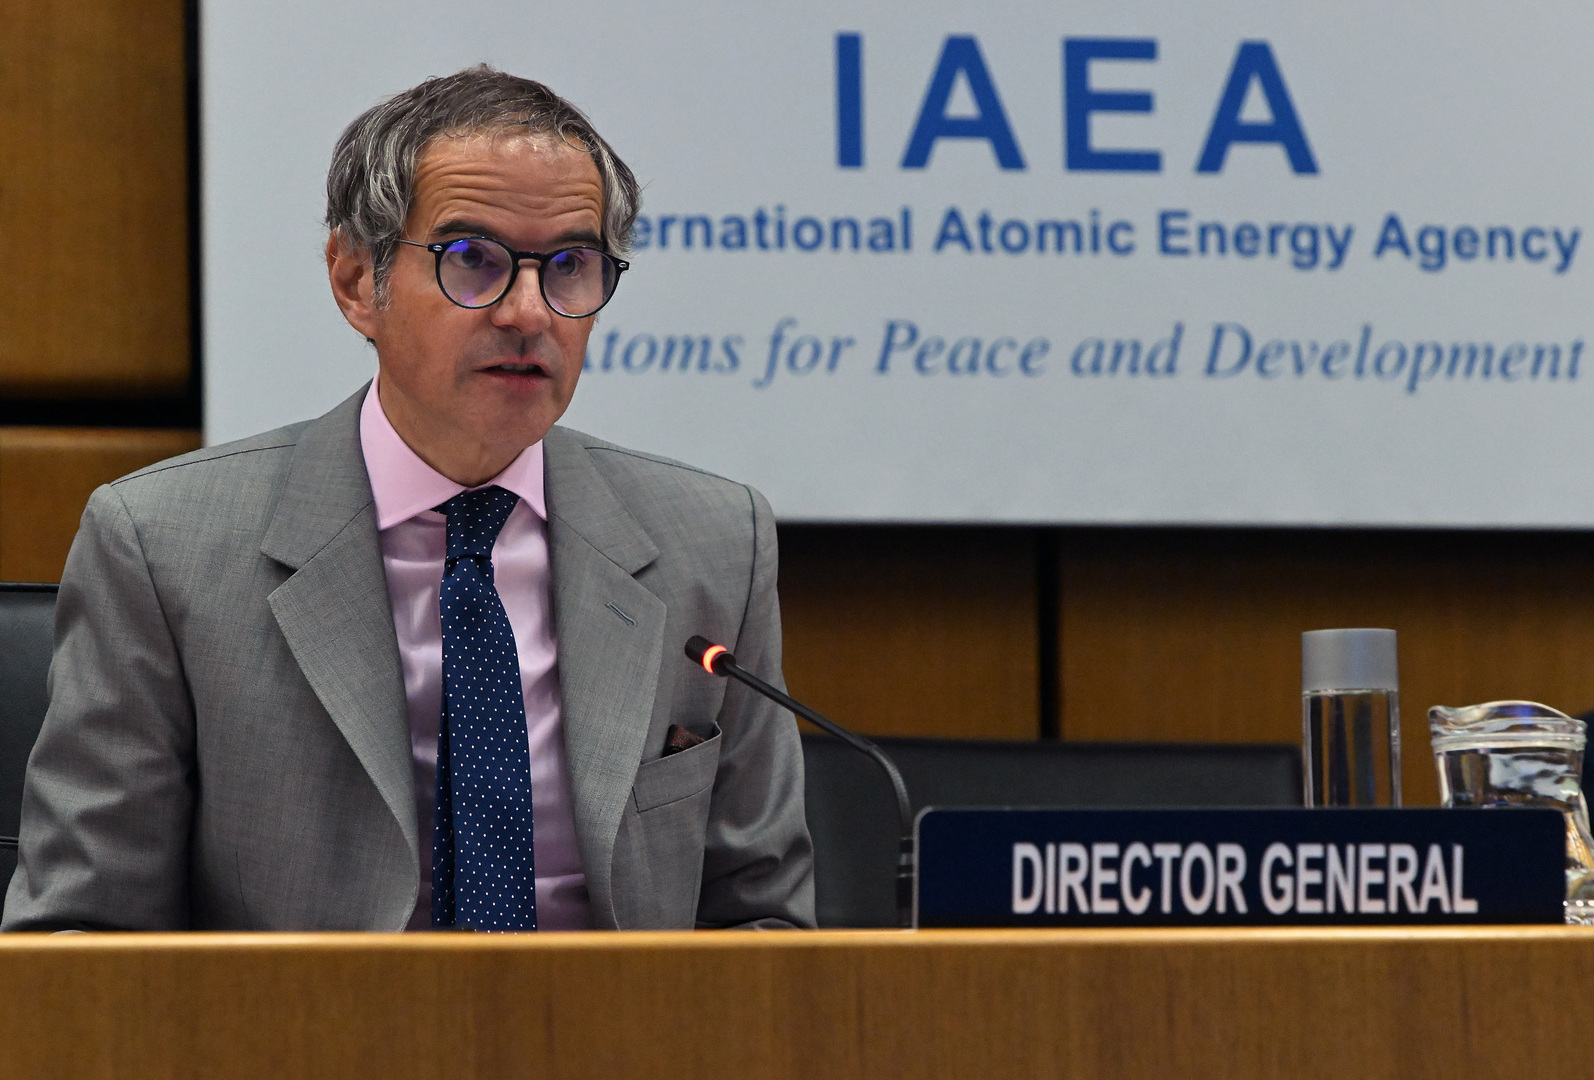 غروسي: الأحداث الأخيرة لم تؤثر على عمل الوكالة الدولية للطاقة الذرية في إيران